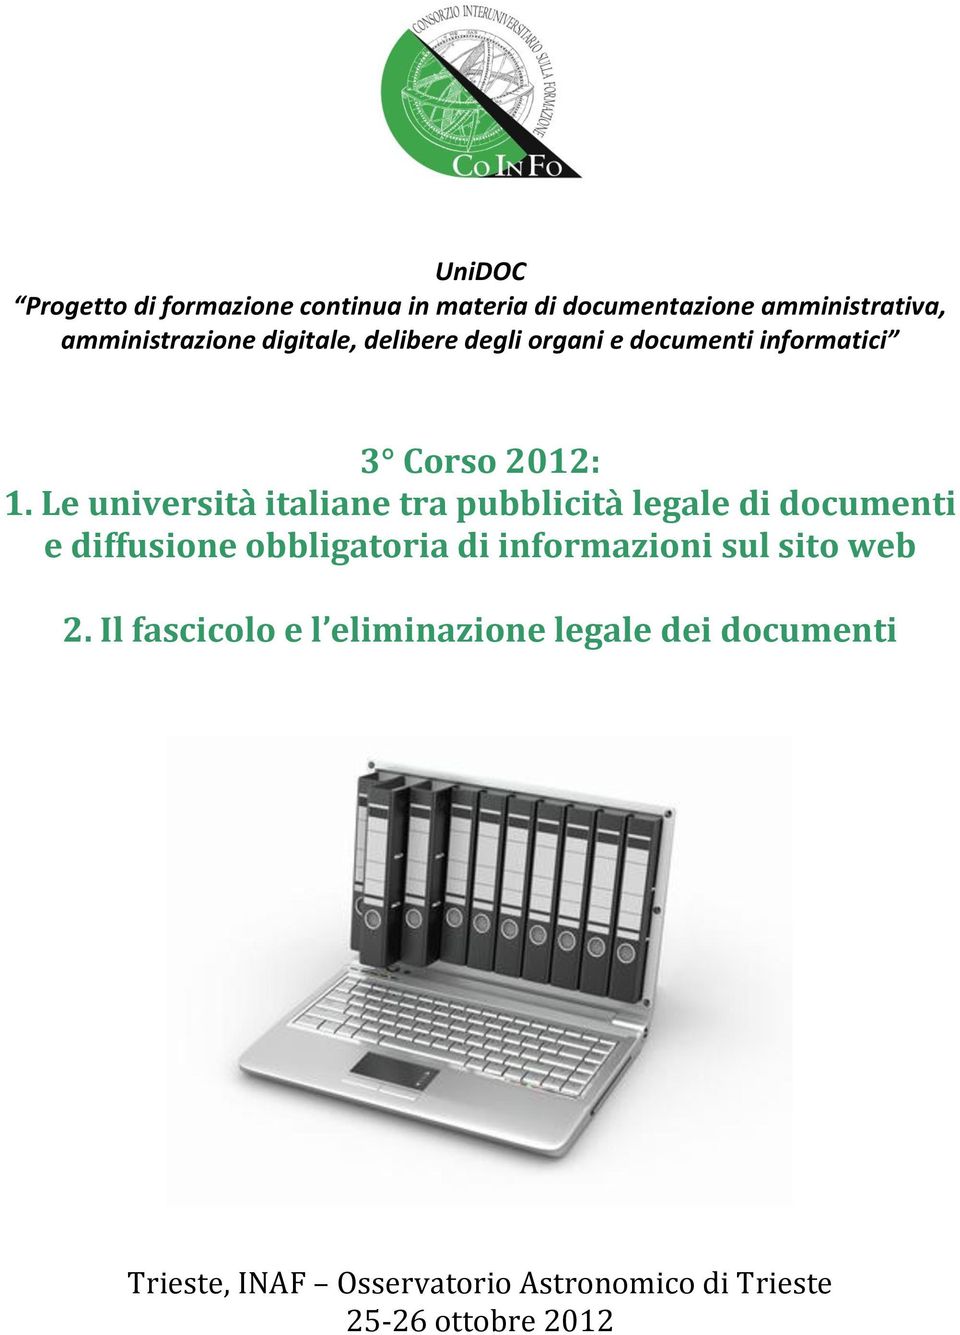 Le università italiane tra pubblicità legale di documenti e diffusione obbligatoria di informazioni